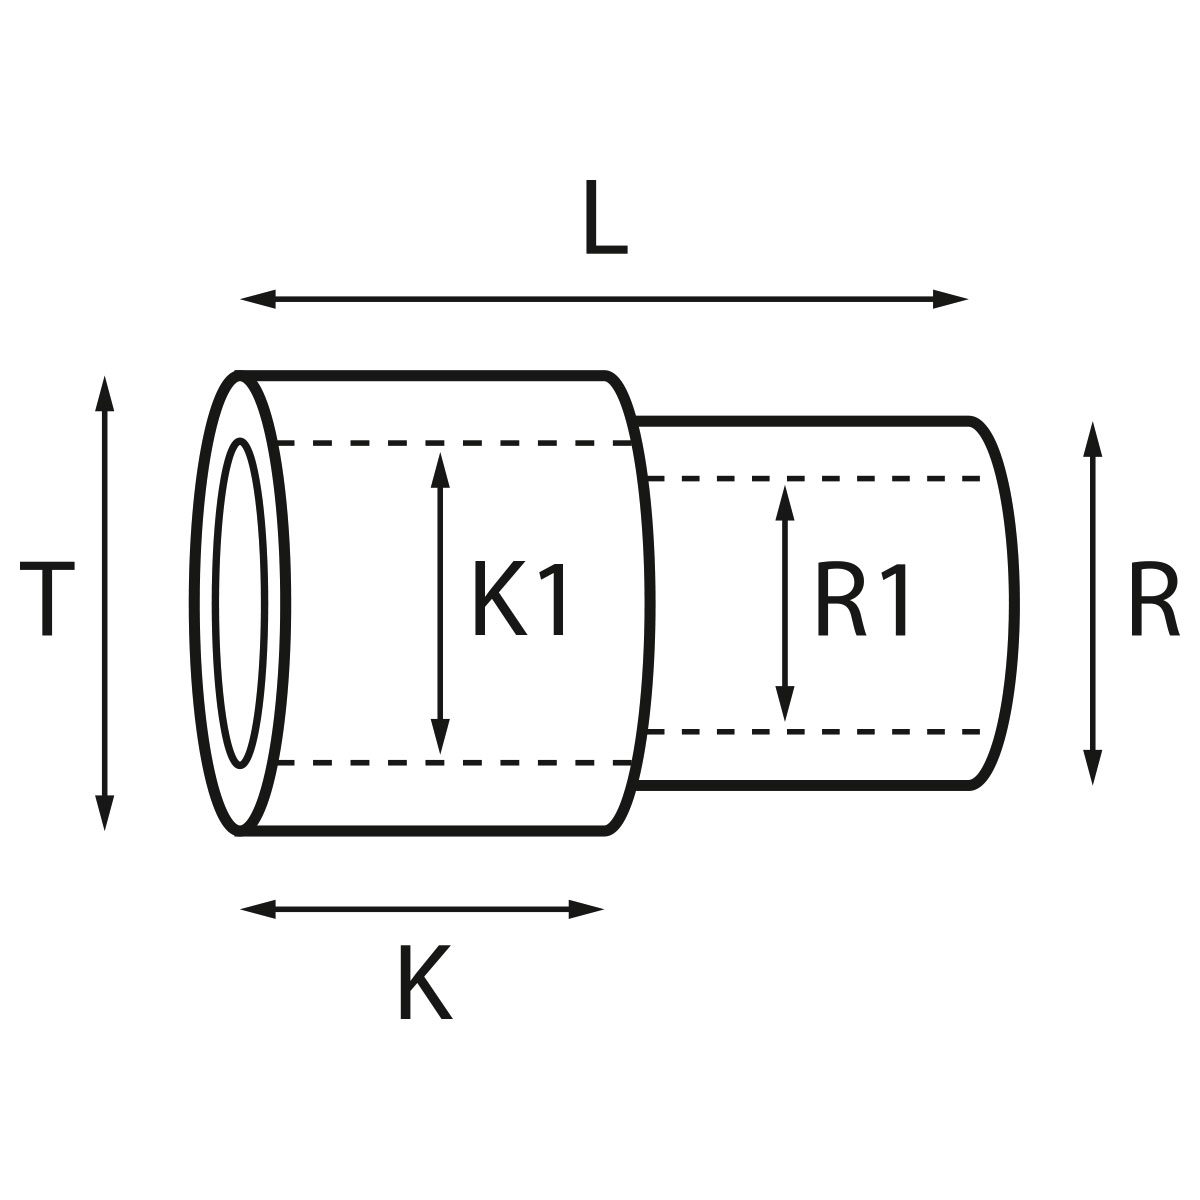 Gehäusetube Typ AS 13827, Tubus Ø 2,5 mm, Gesamtlänge 4,45 mm, für wasserdichte Kronen